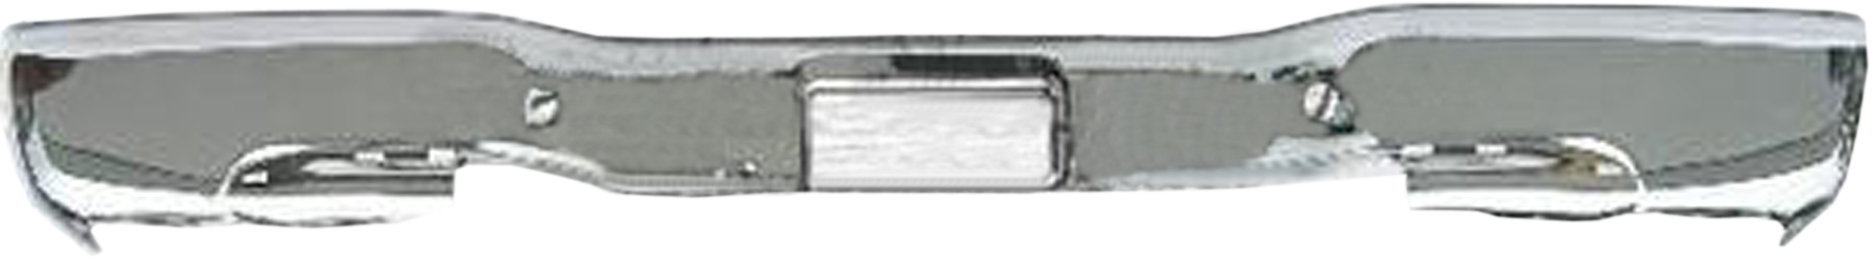 Aftermarket METAL REAR BUMPERS for GMC - SIERRA 2500 HD CLASSIC, SIERRA 2500 HD CLASSIC,07-07,Rear bumper face bar